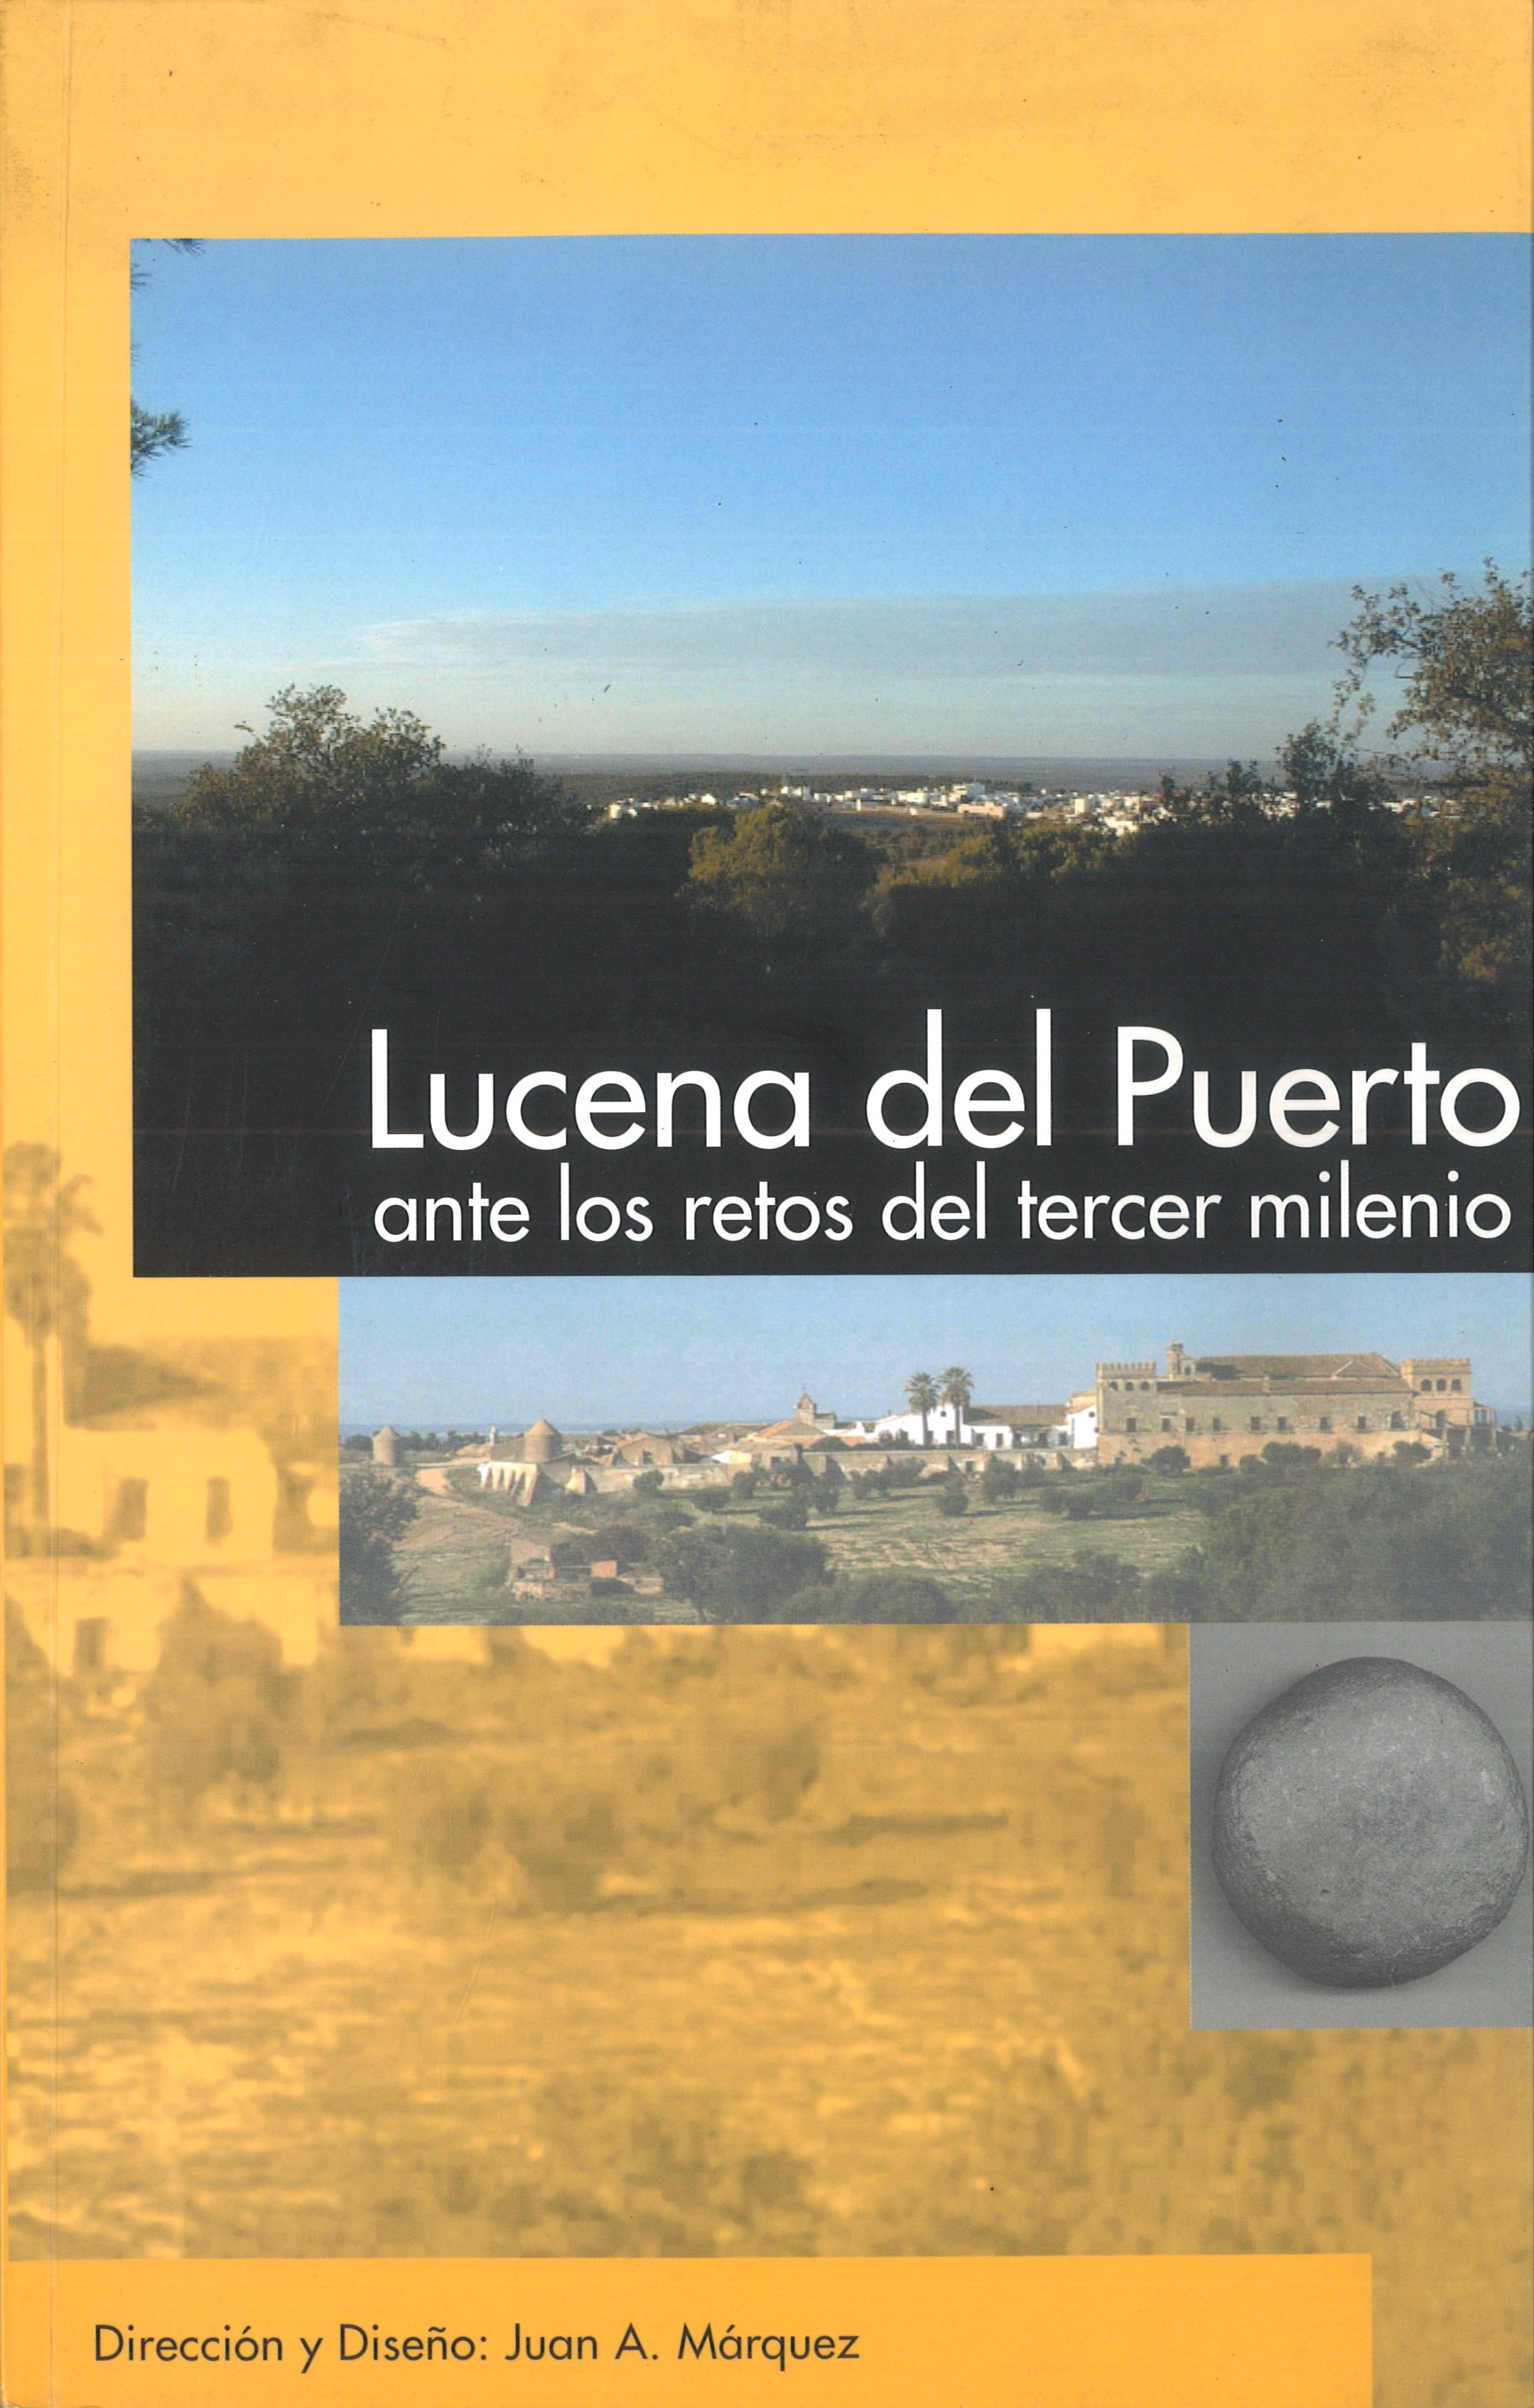 Imagen de portada del libro Lucena del Puerto ante los retos del tercer milenio